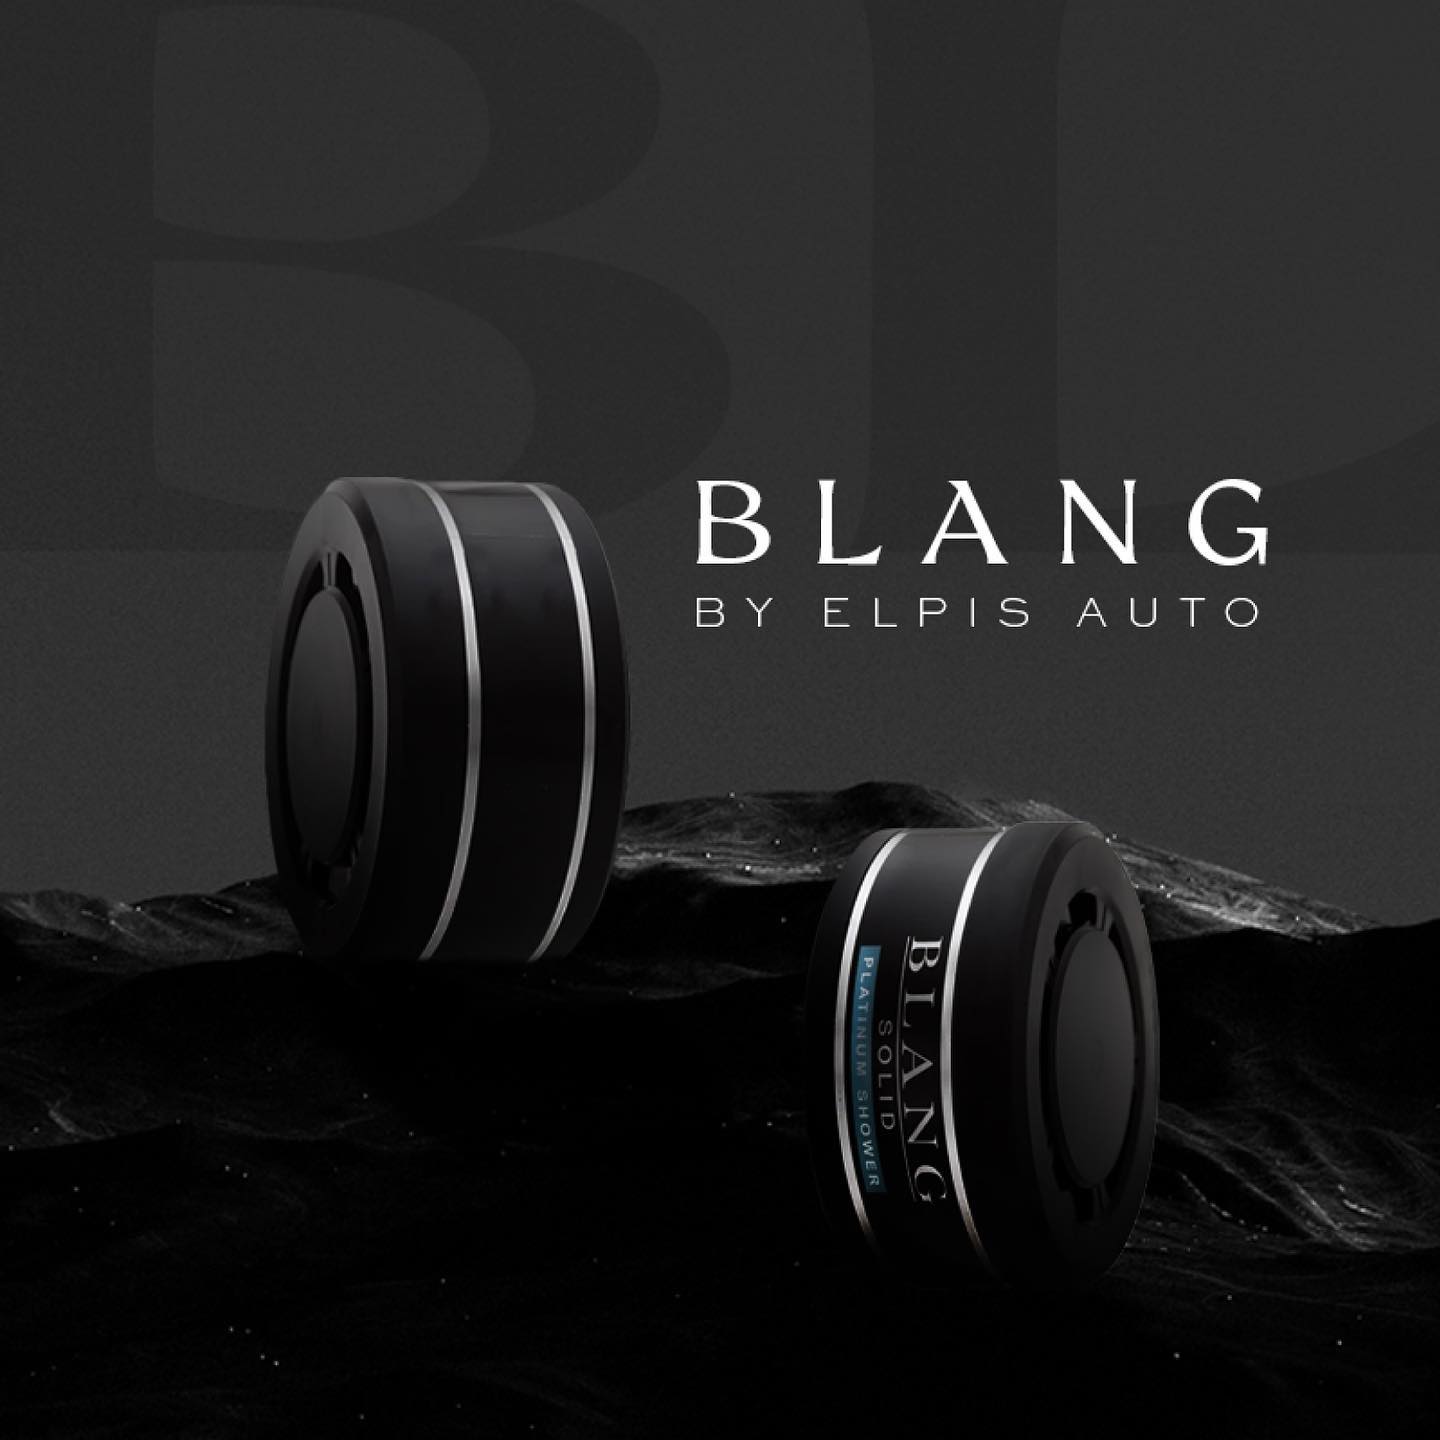 Blang Solid 3P Platinum Shower-Set of 3Pcs